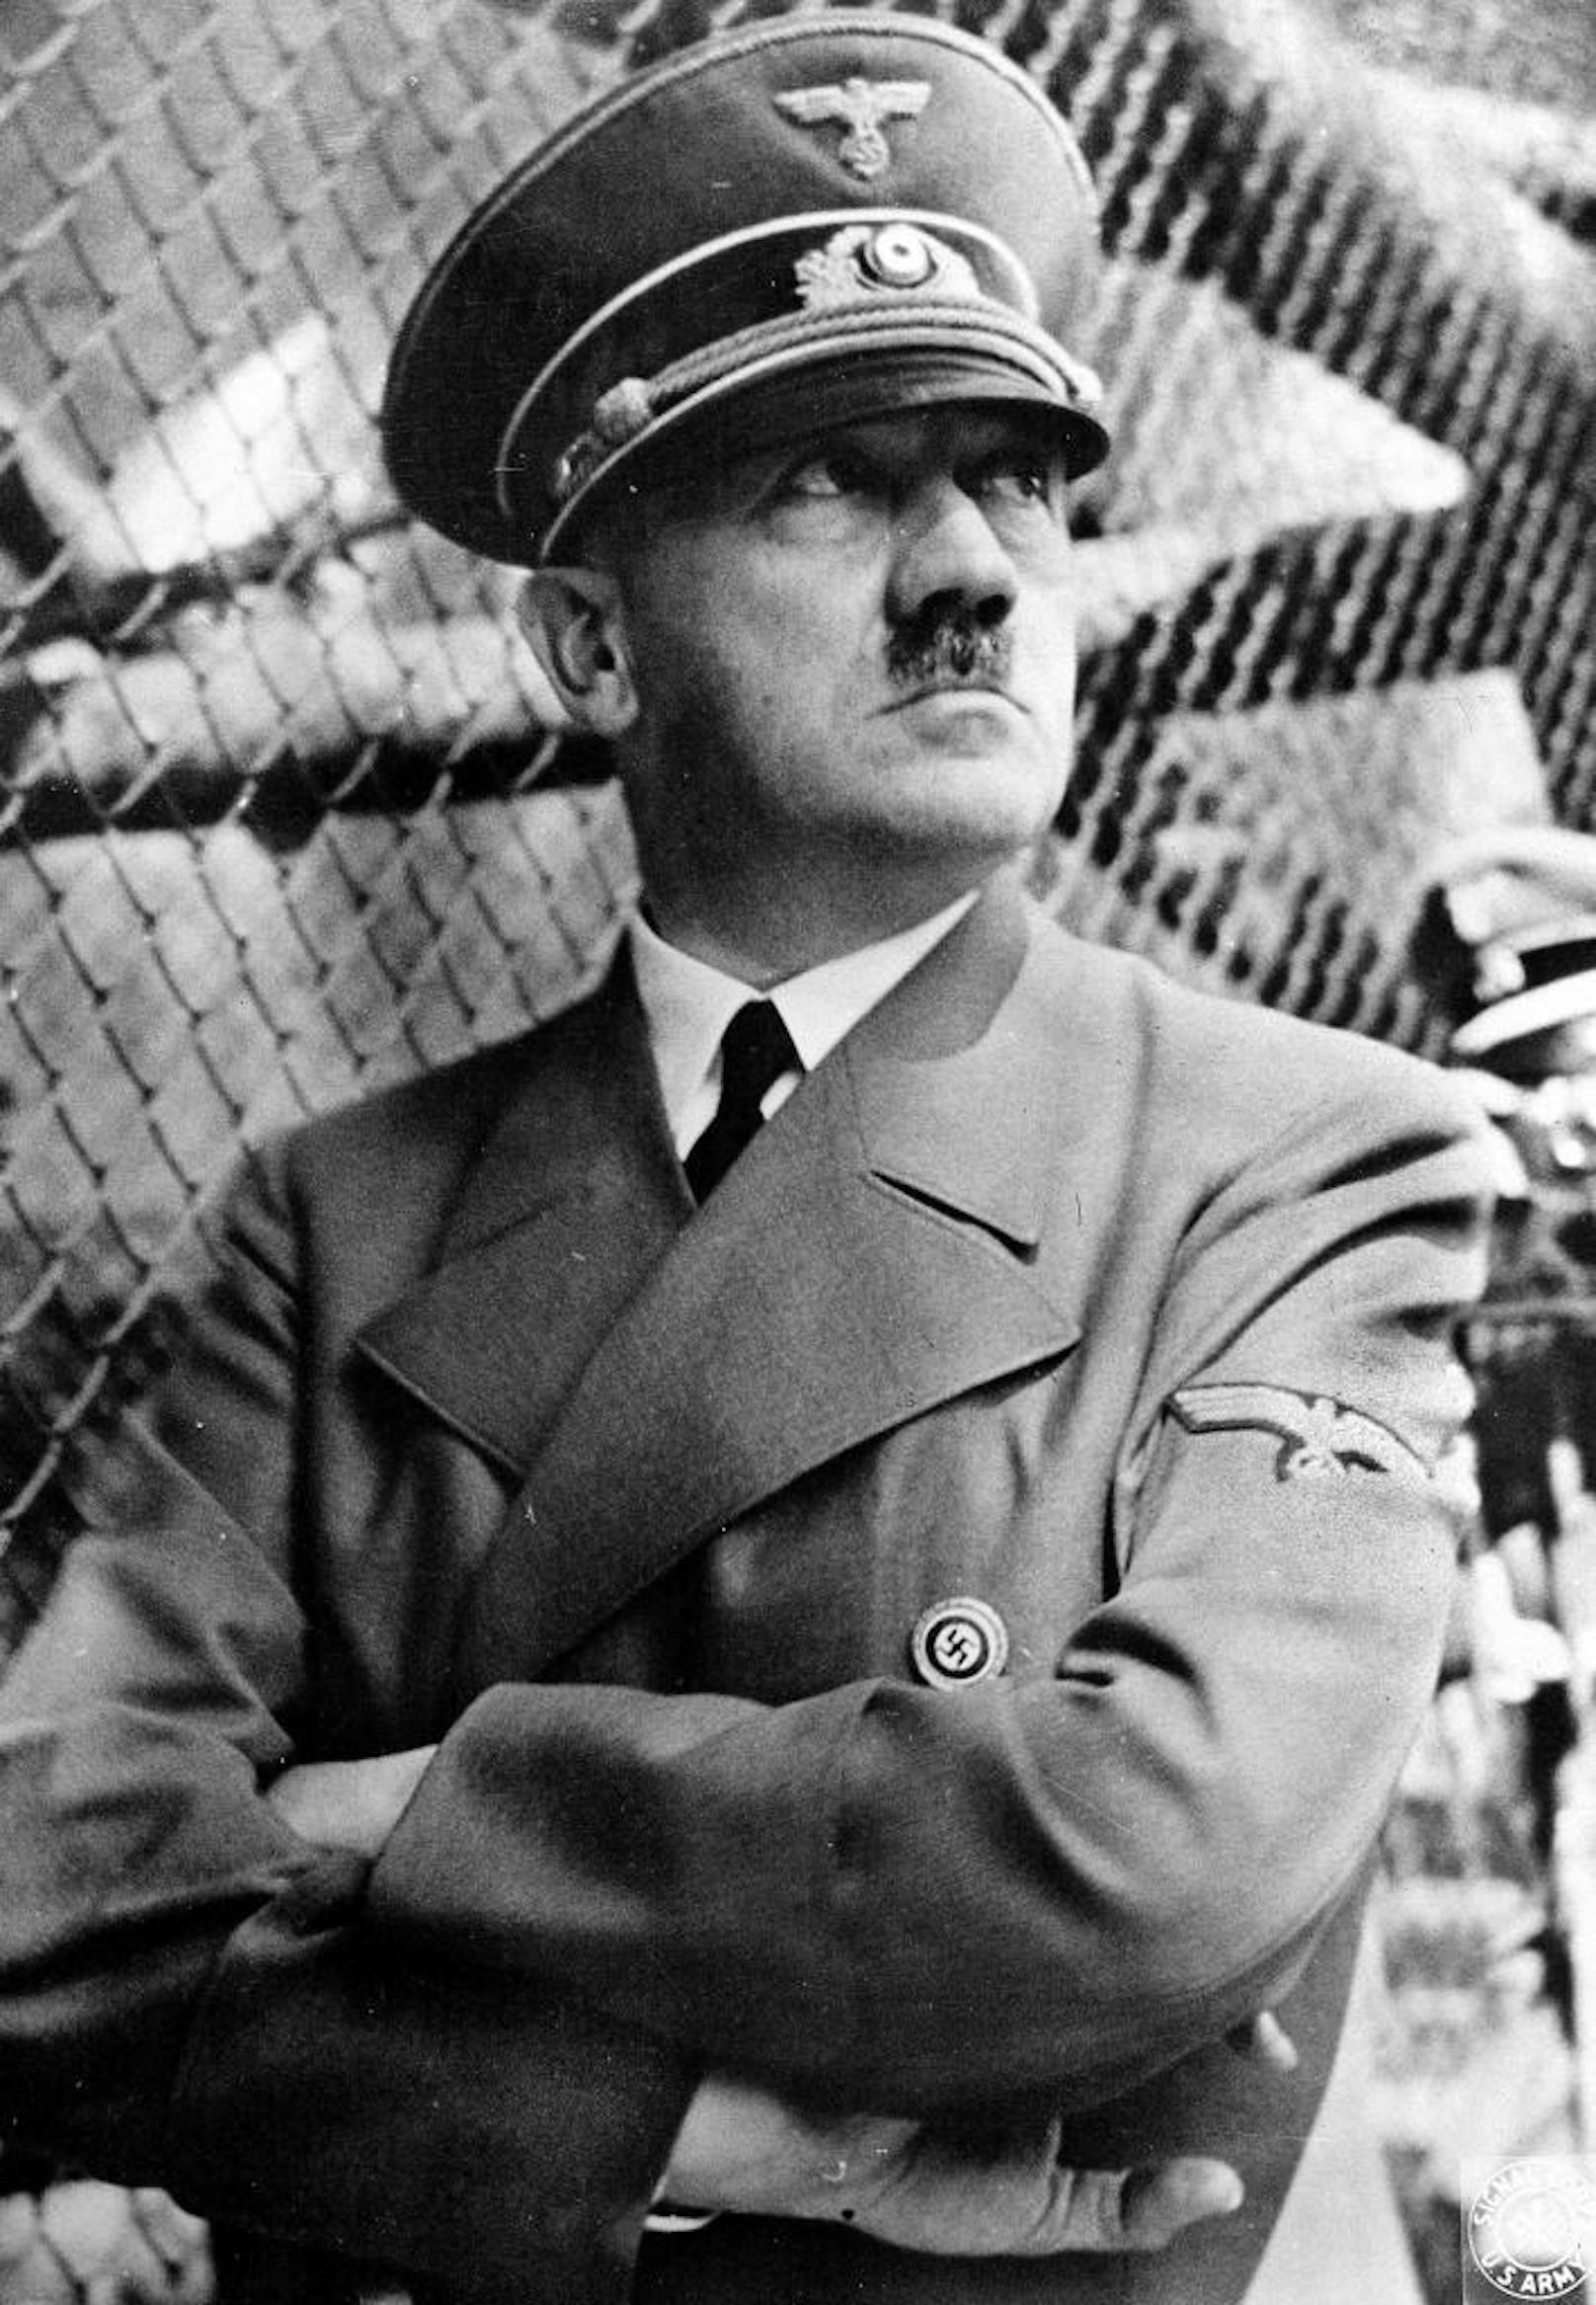 "Wir können all die Verschwörungstheorien über Hitler zu Grabe tragen", freut sich Charlier. "Er weder mit einem U-Boot nach Argentinien geflohen, noch in eine Geheimbasis in der Antarktis oder der dunklen Seite des Mondes."